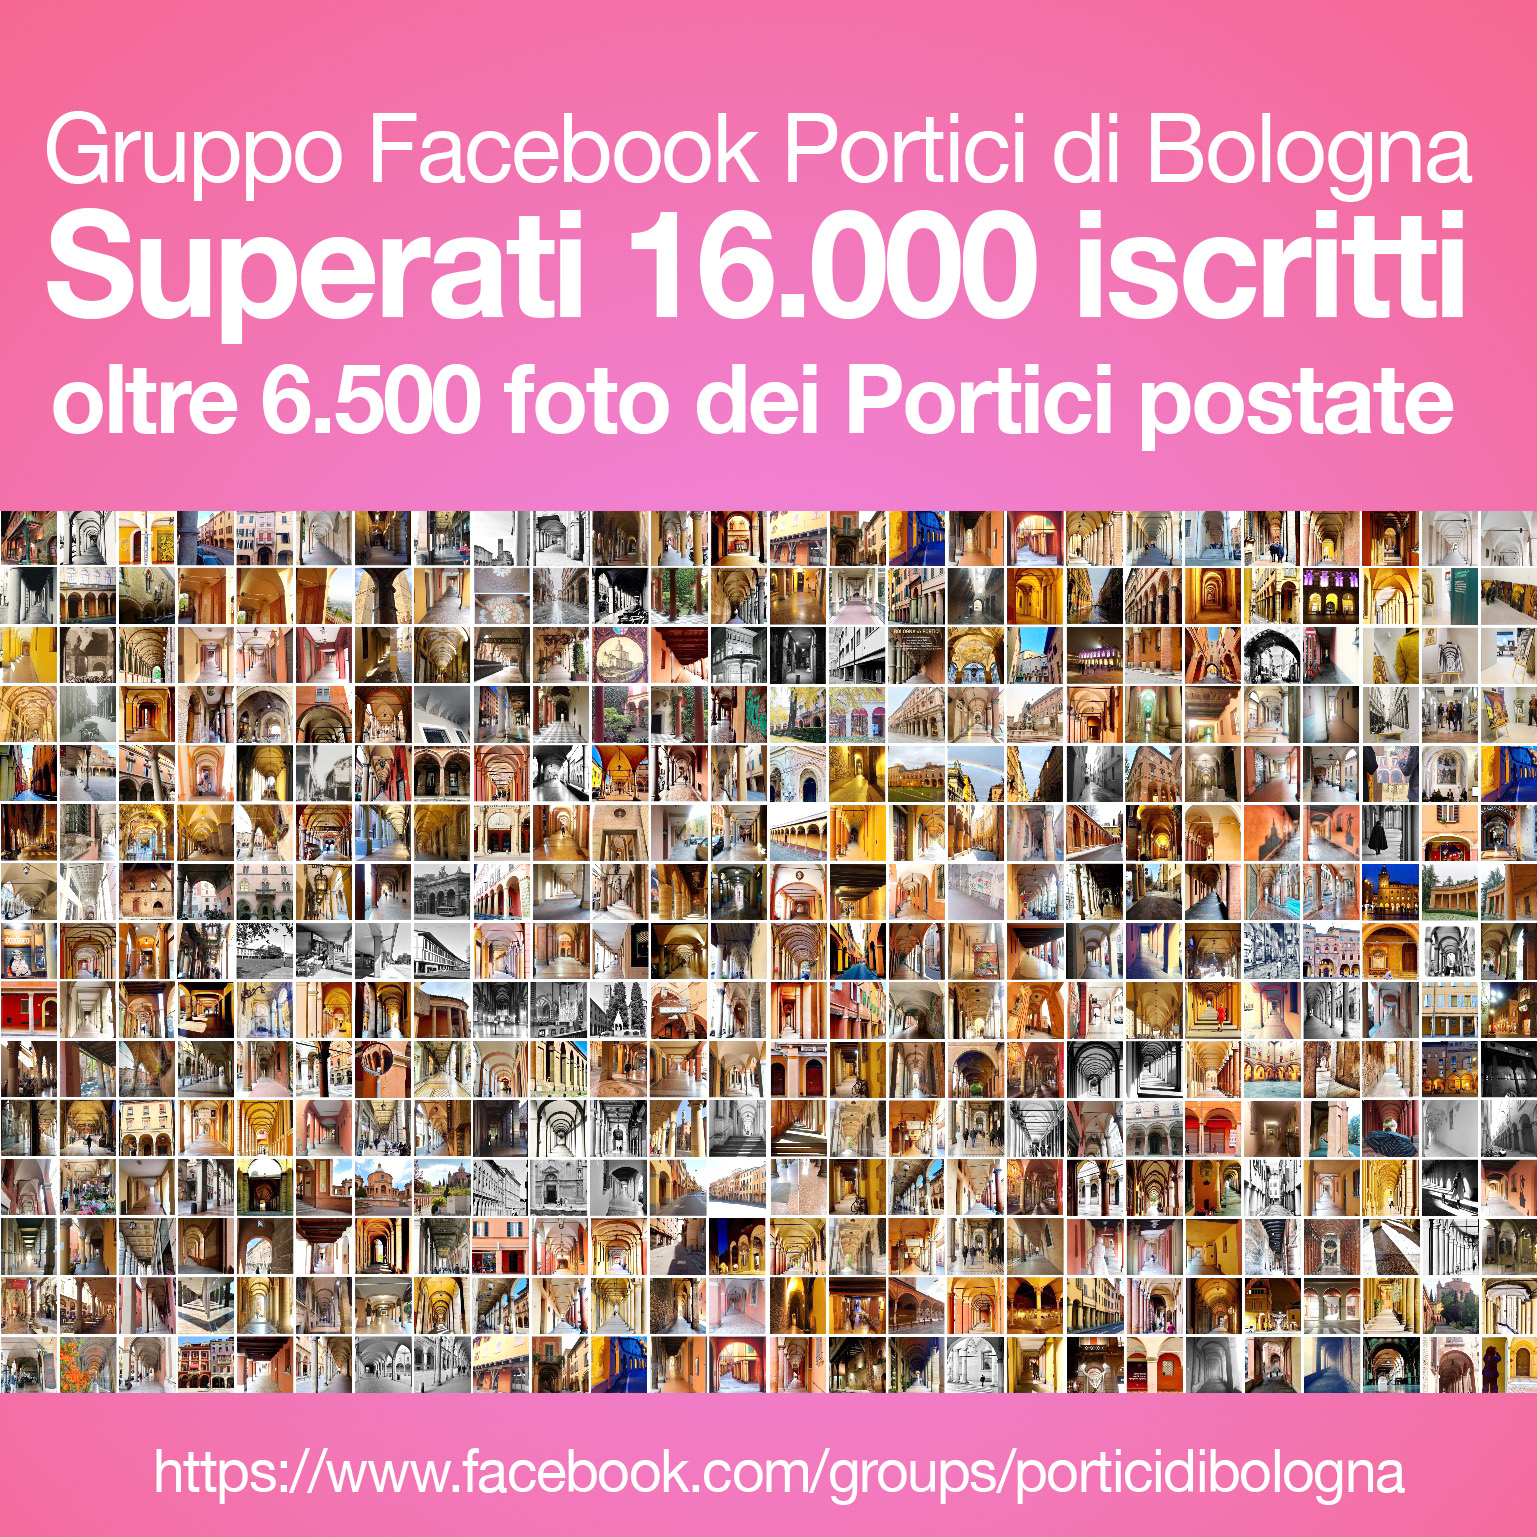 Gruppo Facebook PORTICI DI BOLOGNA. Superati 16.000 iscritti con oltre 6.500 foto postate.